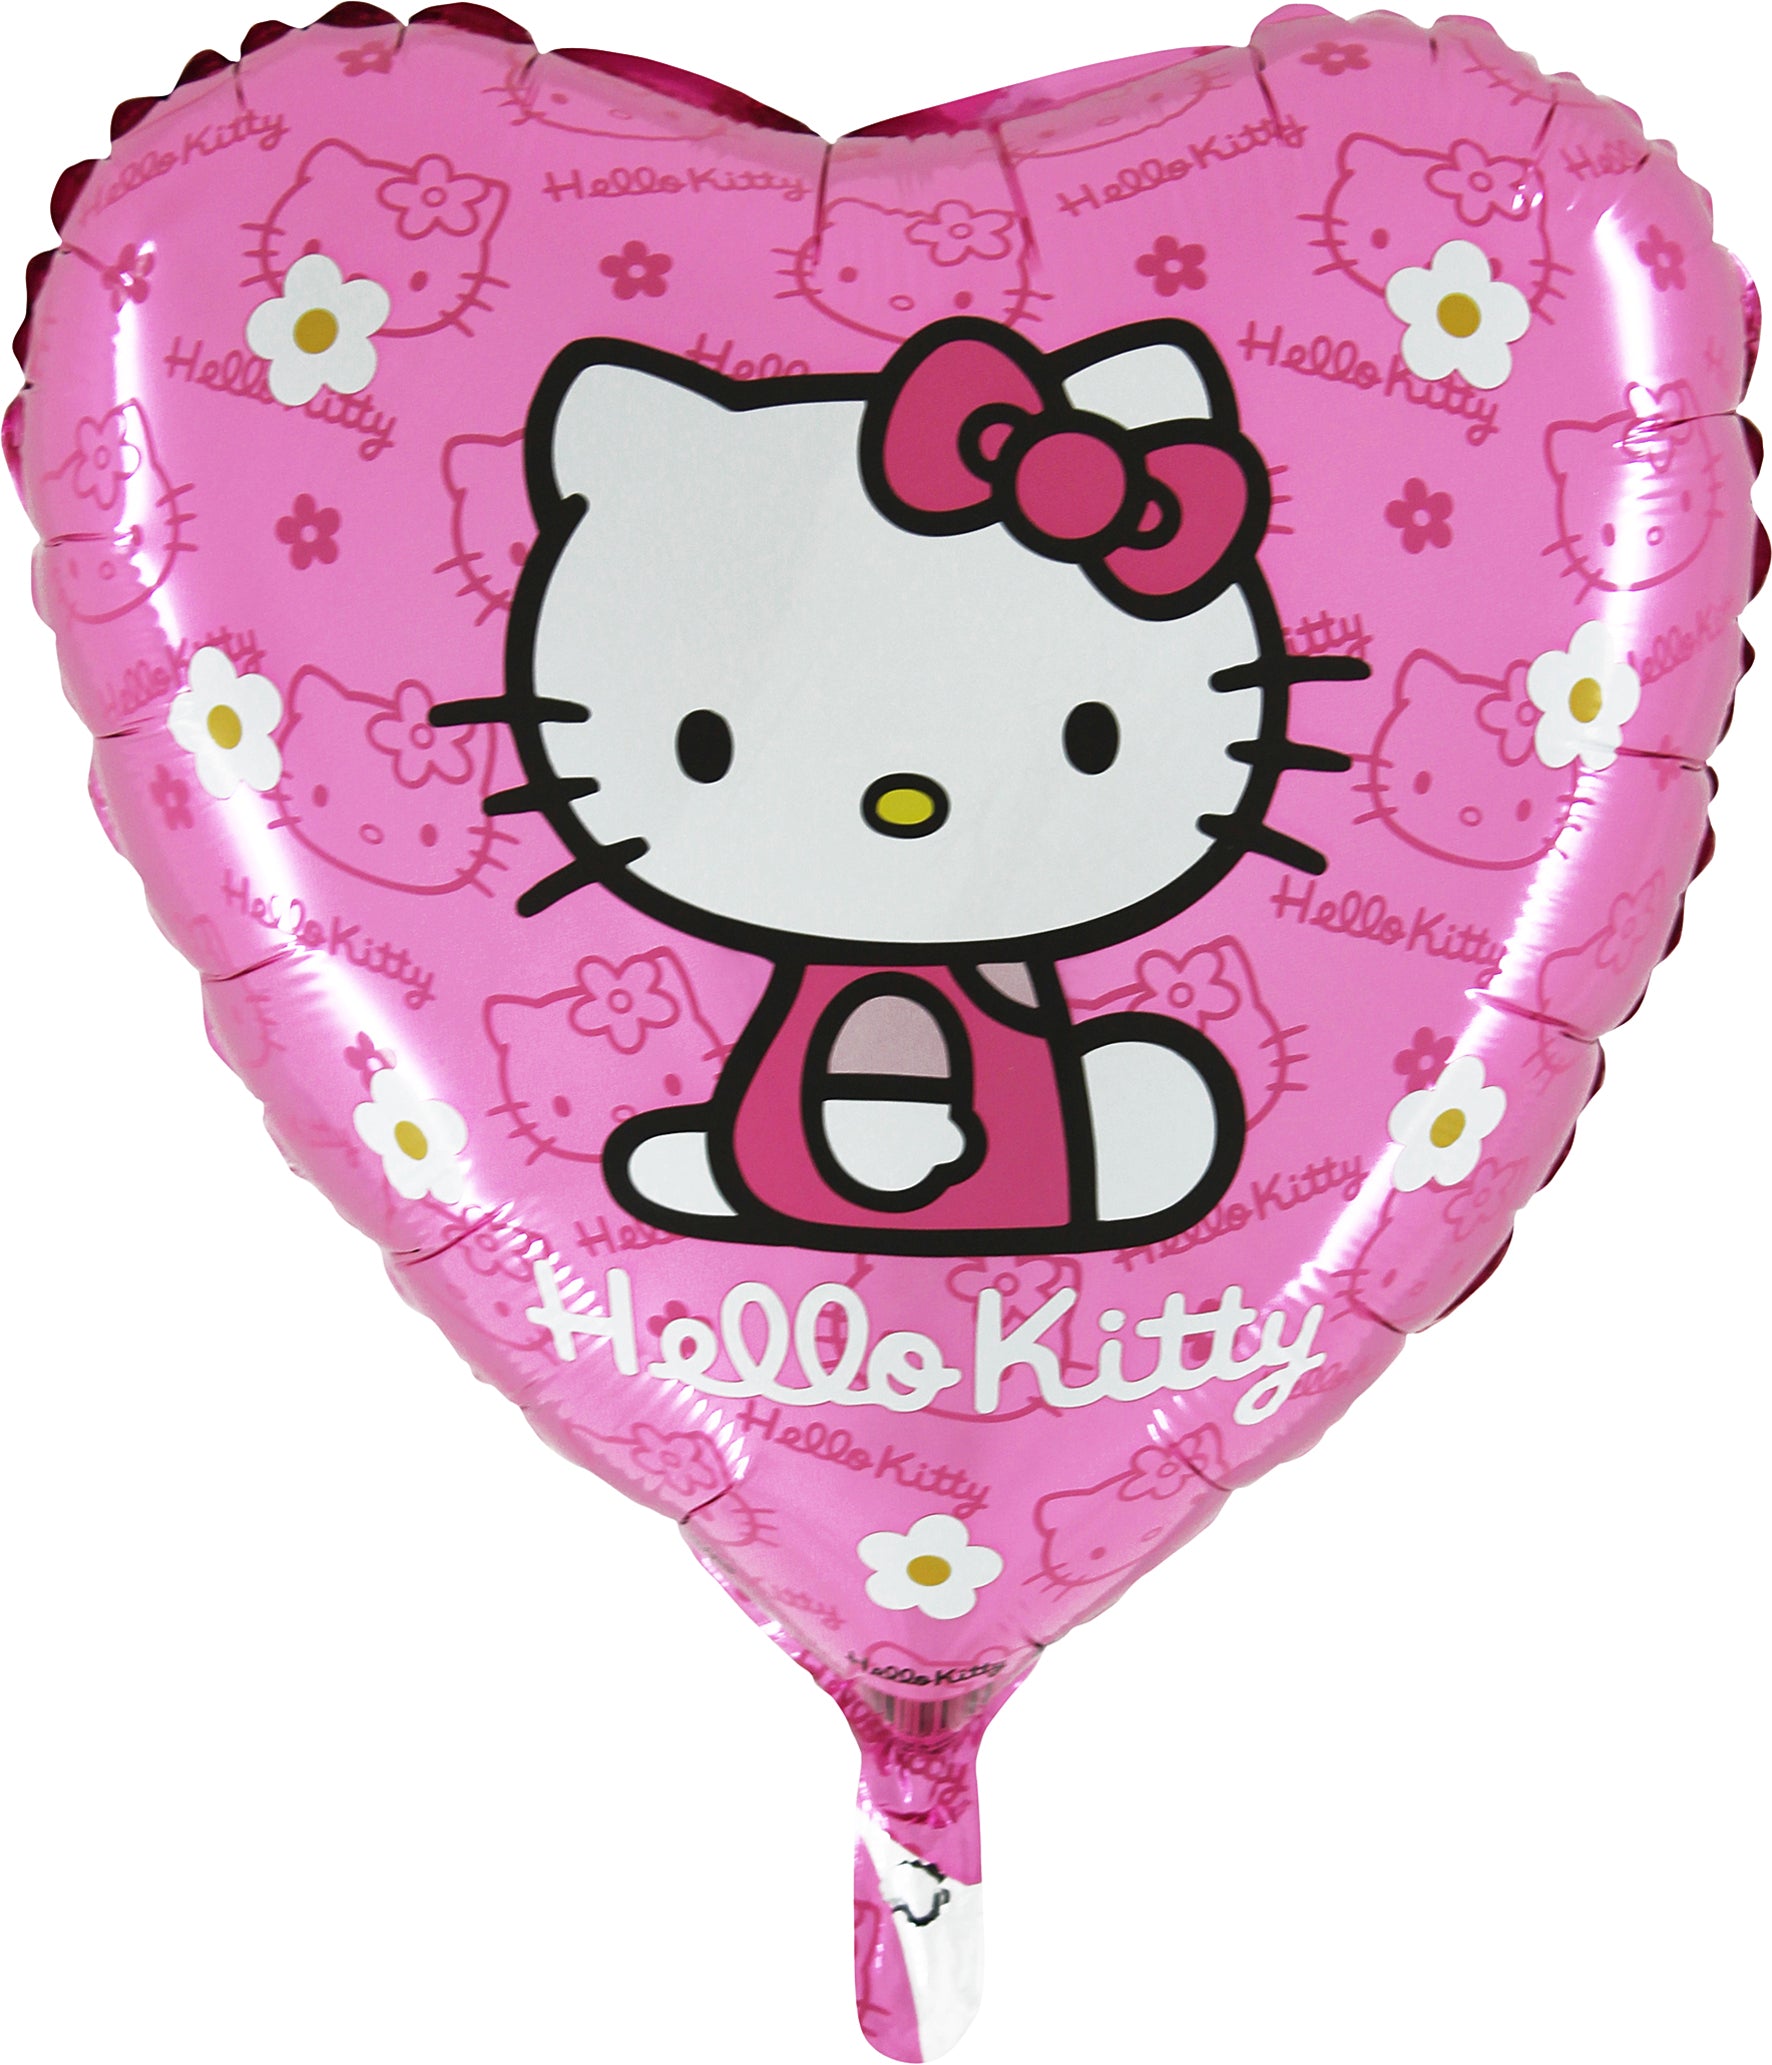 pink heart shaped hello kitty balloon